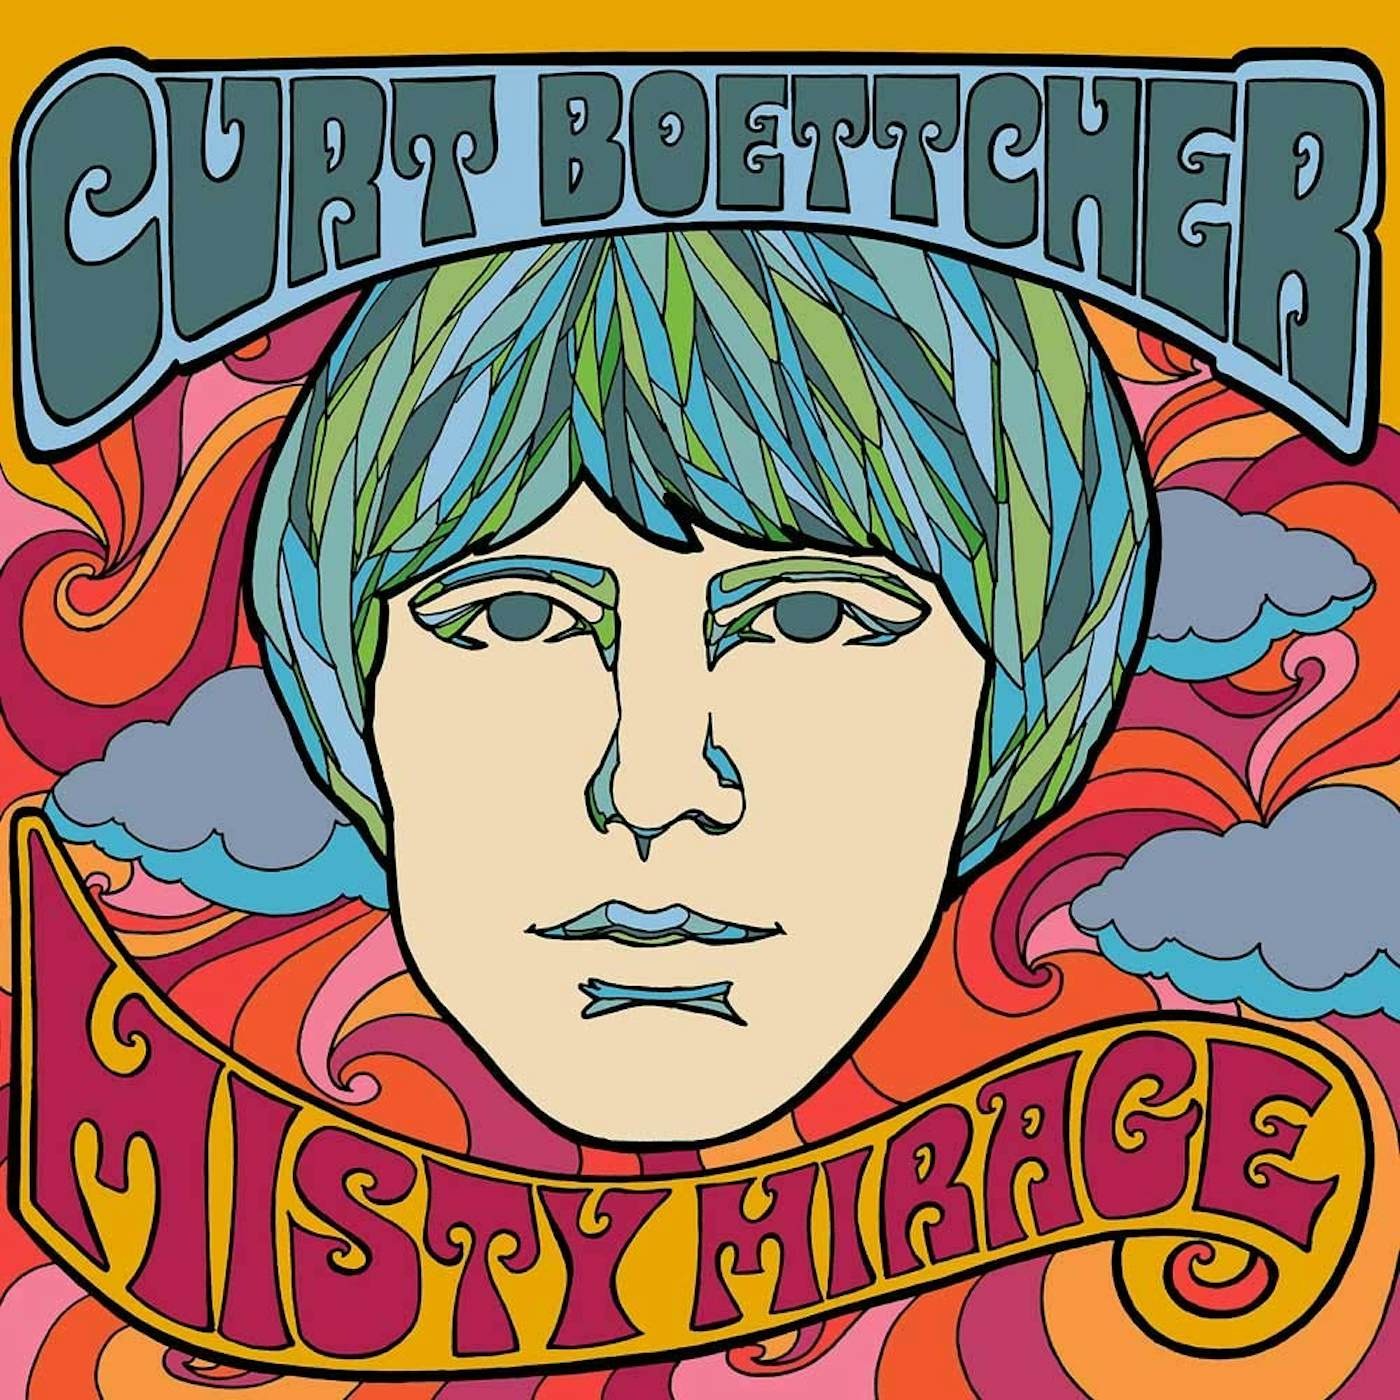 Curt Boettcher Misty Mirage Vinyl Record